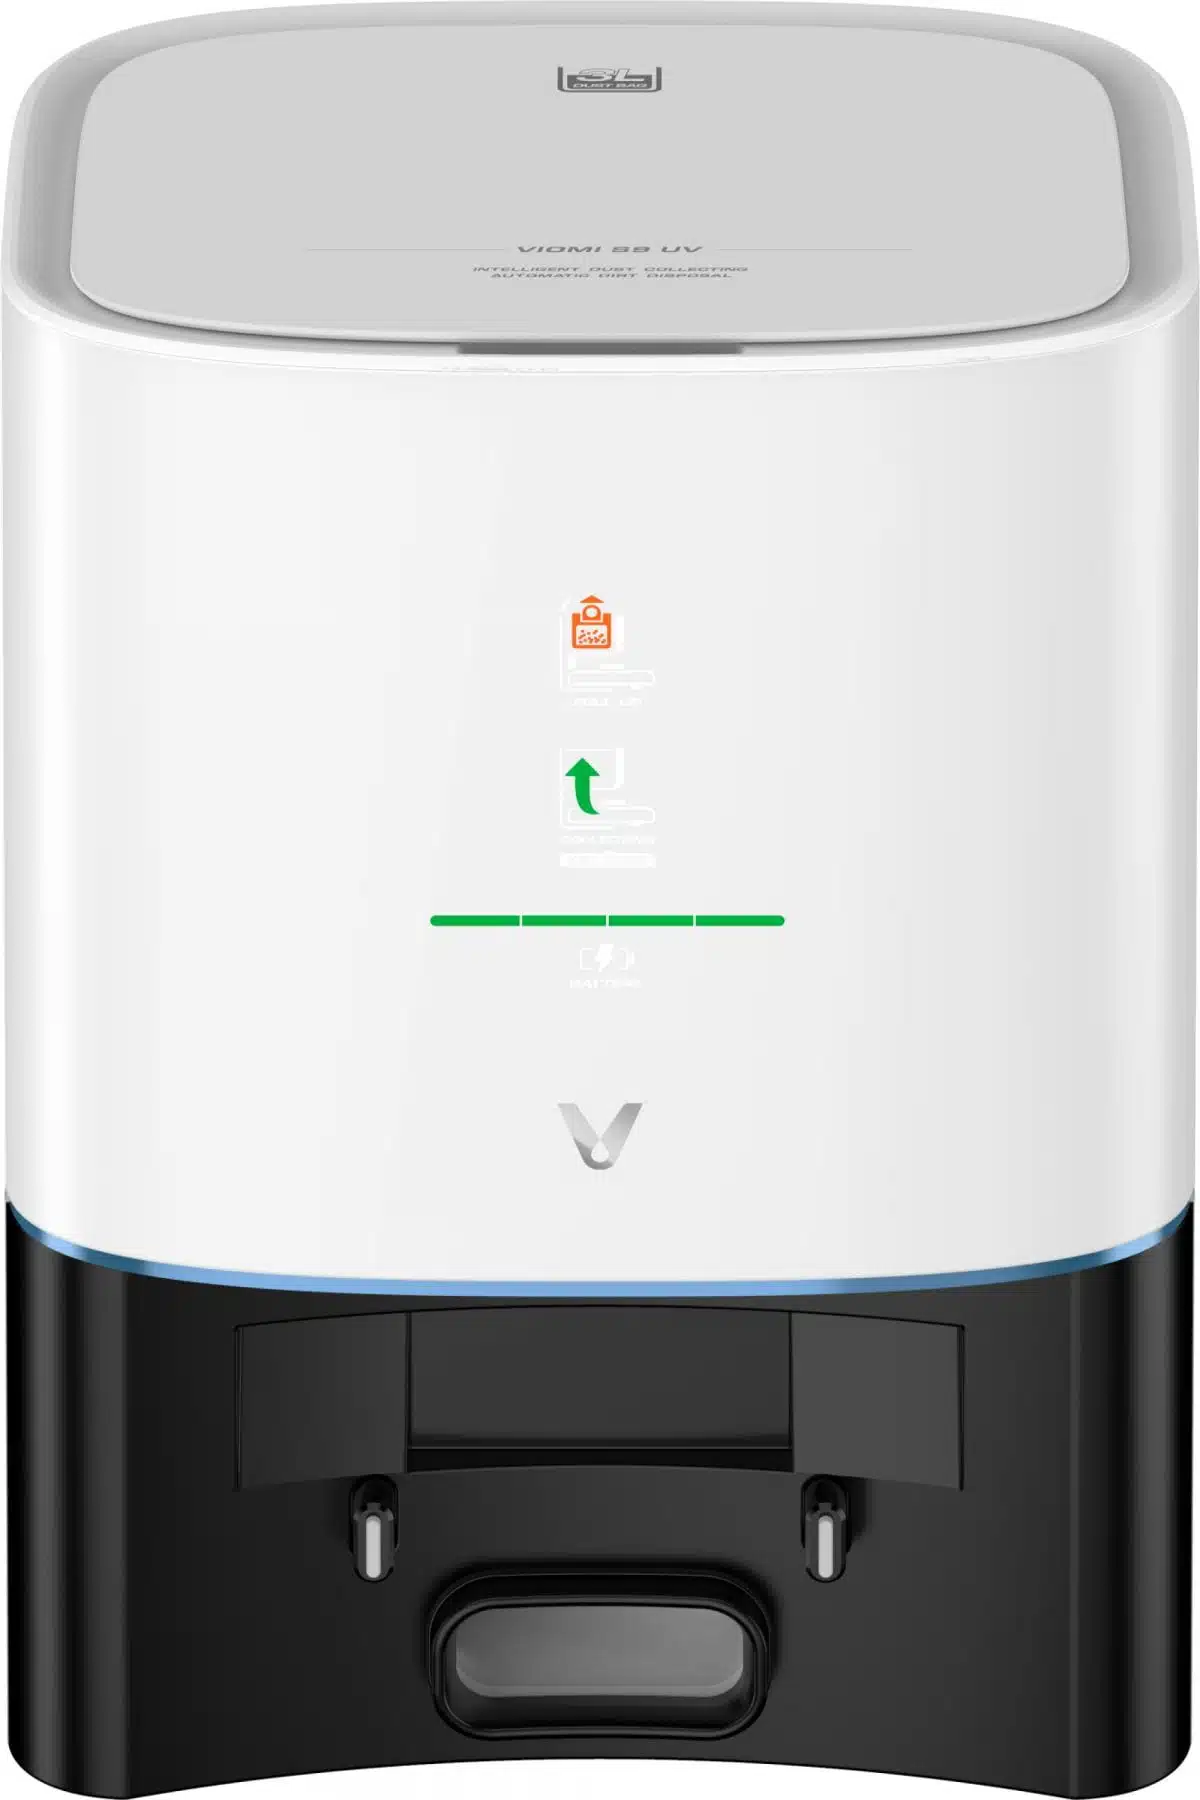 Viomi S9 UV Toz Üniteli Robot Süpürge - Beyaz (Viomi Türkiye Garantili), üzerinde yeşil ışık bulunan beyaz bir makinedir.